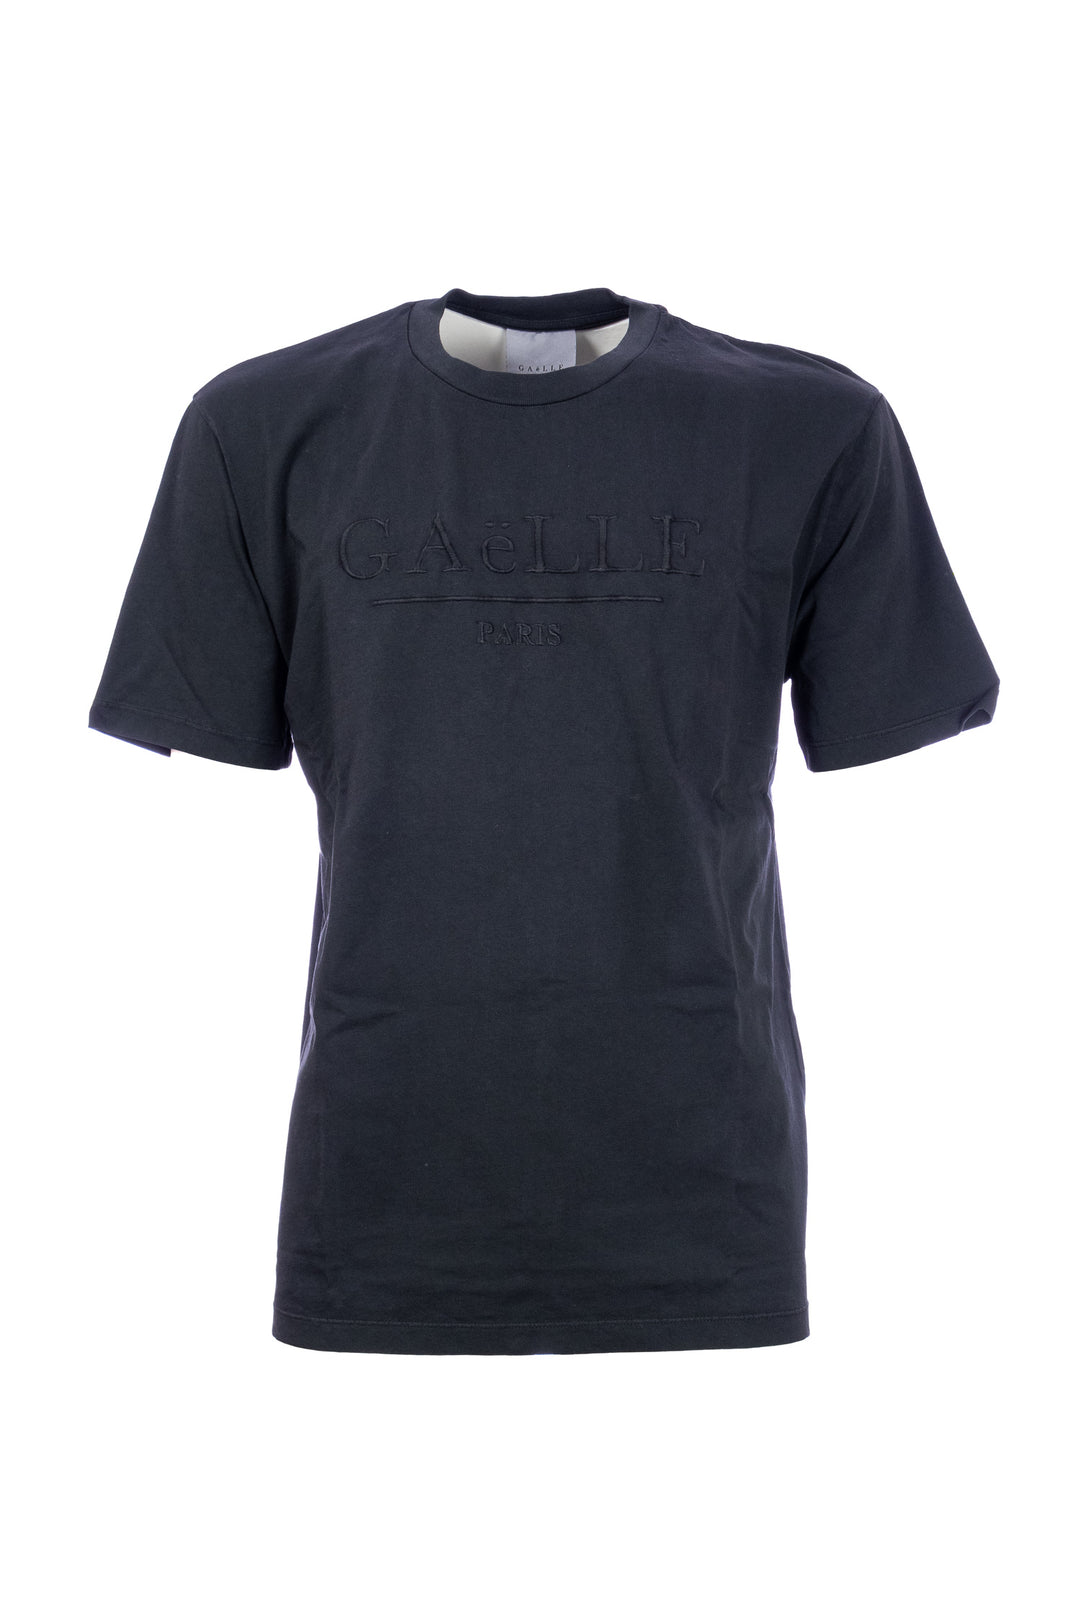 GAELLE T-shirt nera in cotone con logo grande ricamato - Mancinelli 1954